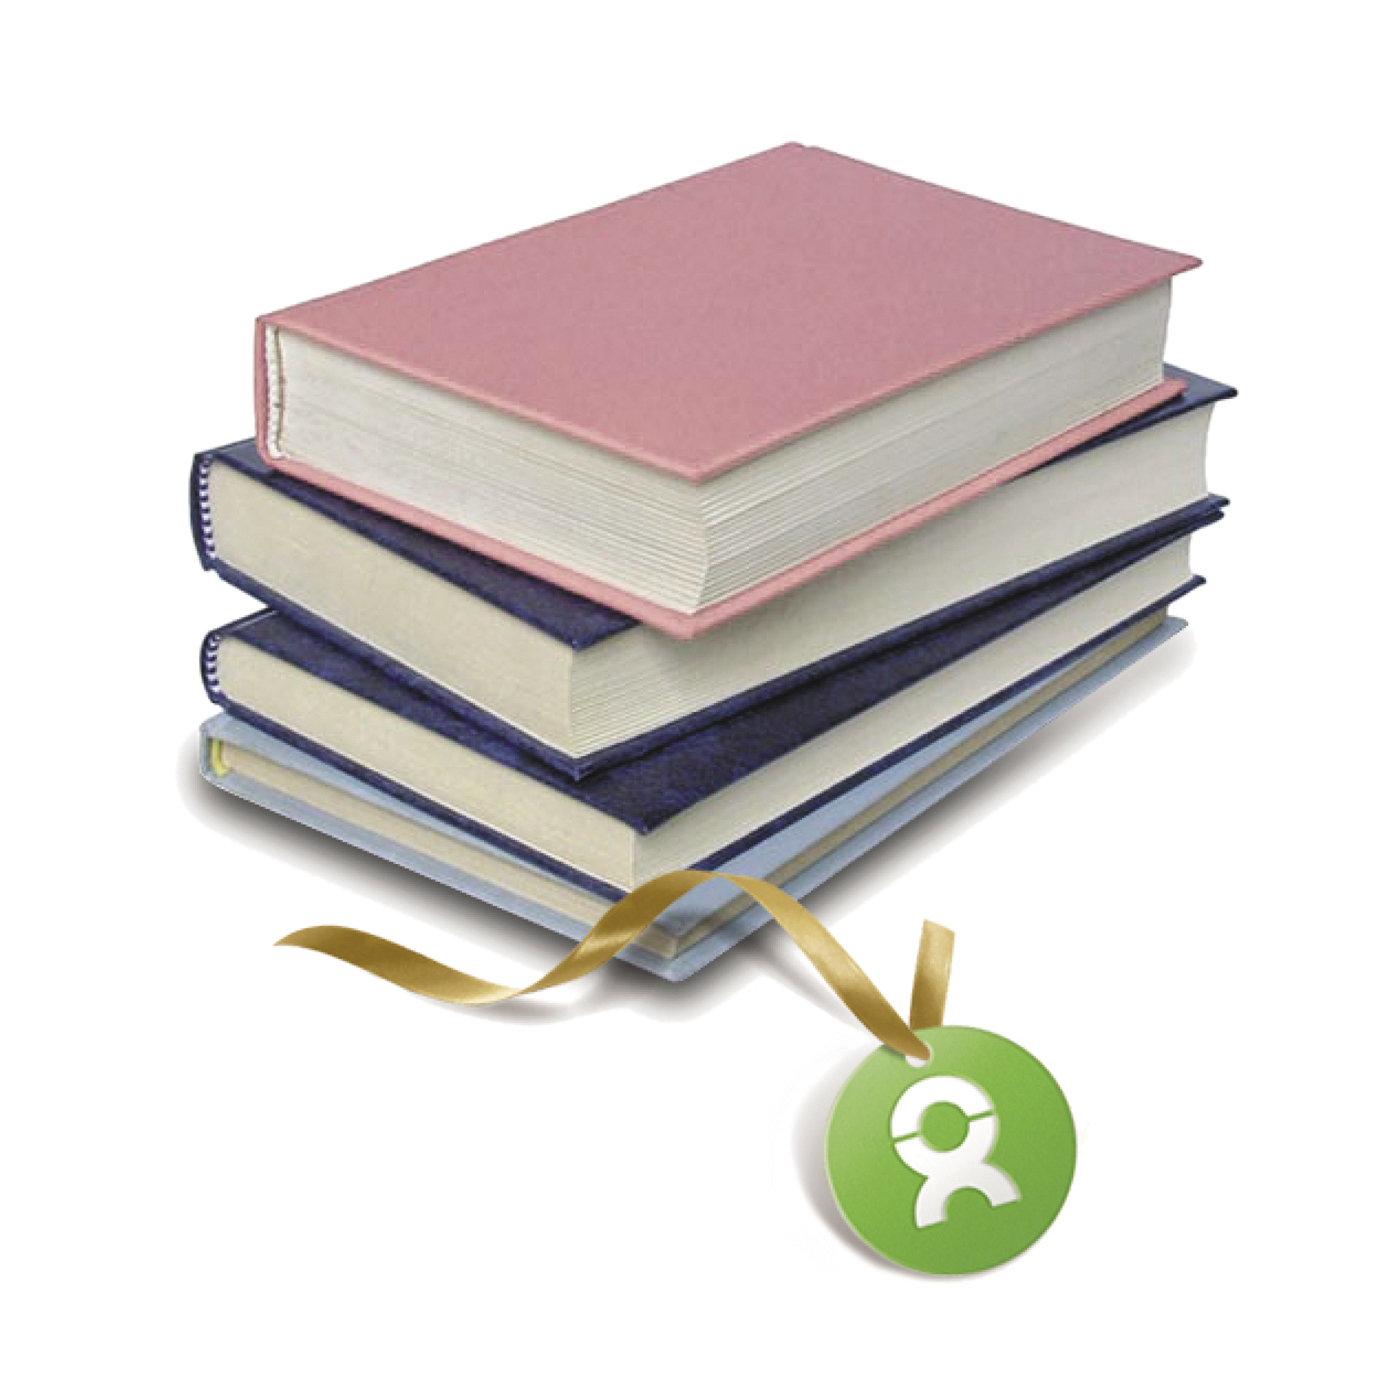 Beispiel Geschenk Spende Schulbücher: Grafik von einem Stapel Schulbücher 